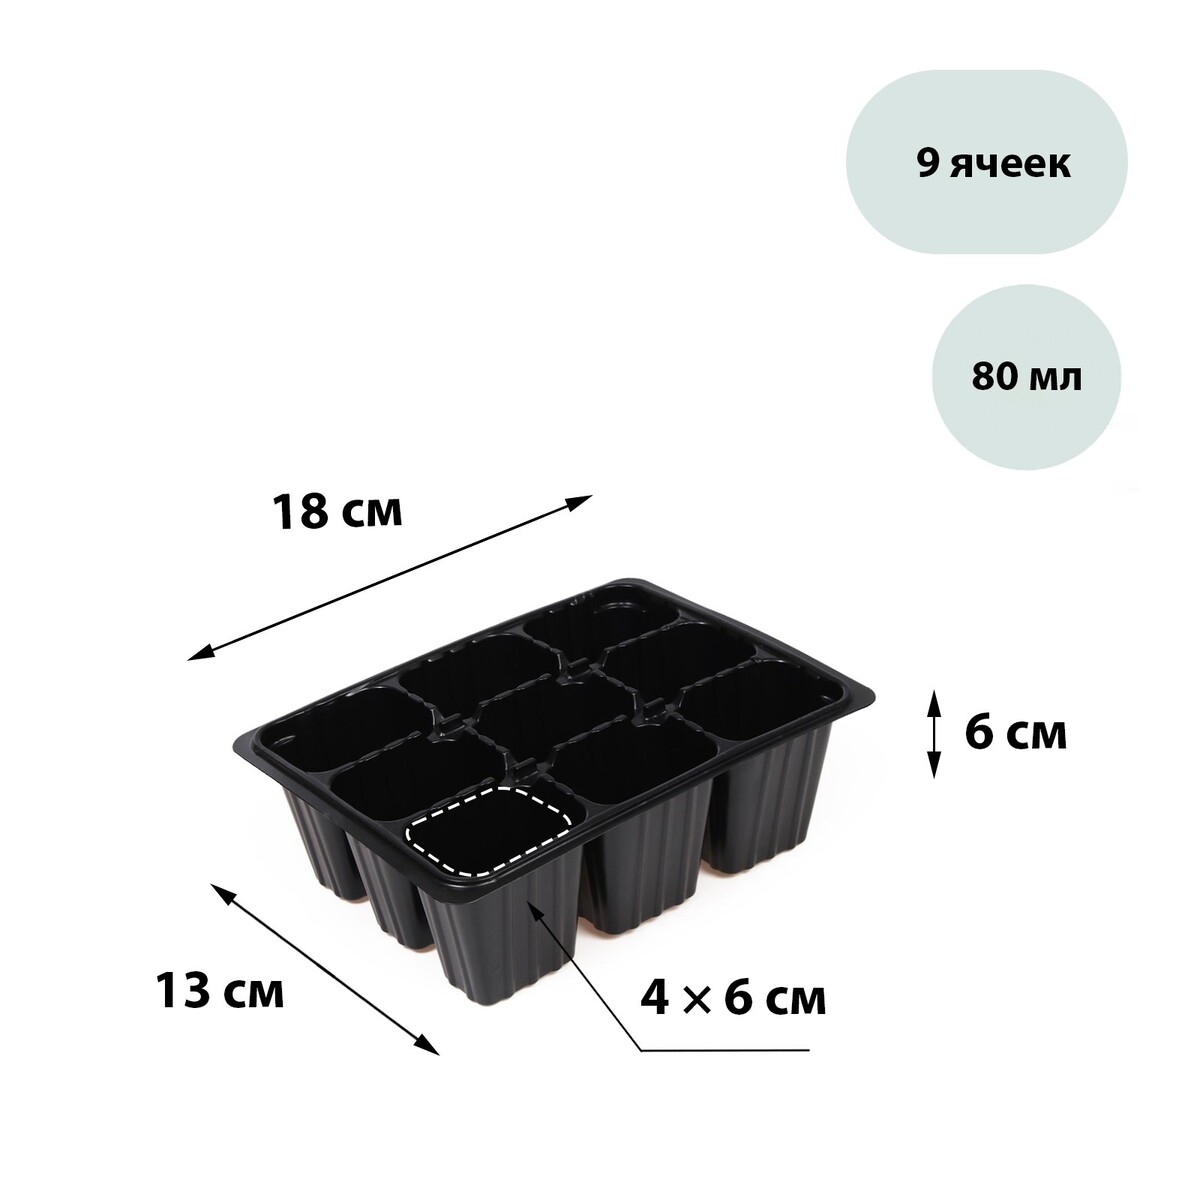 Кассета для рассады, на 9 ячеек, по 80 мл, пластиковая, черная, 18 × 13 × 6 см, greengo кассета для рассады на 6 ячеек по 120 мл пластиковая черная 18 × 13 × 6 см в наборе 10 шт greengo